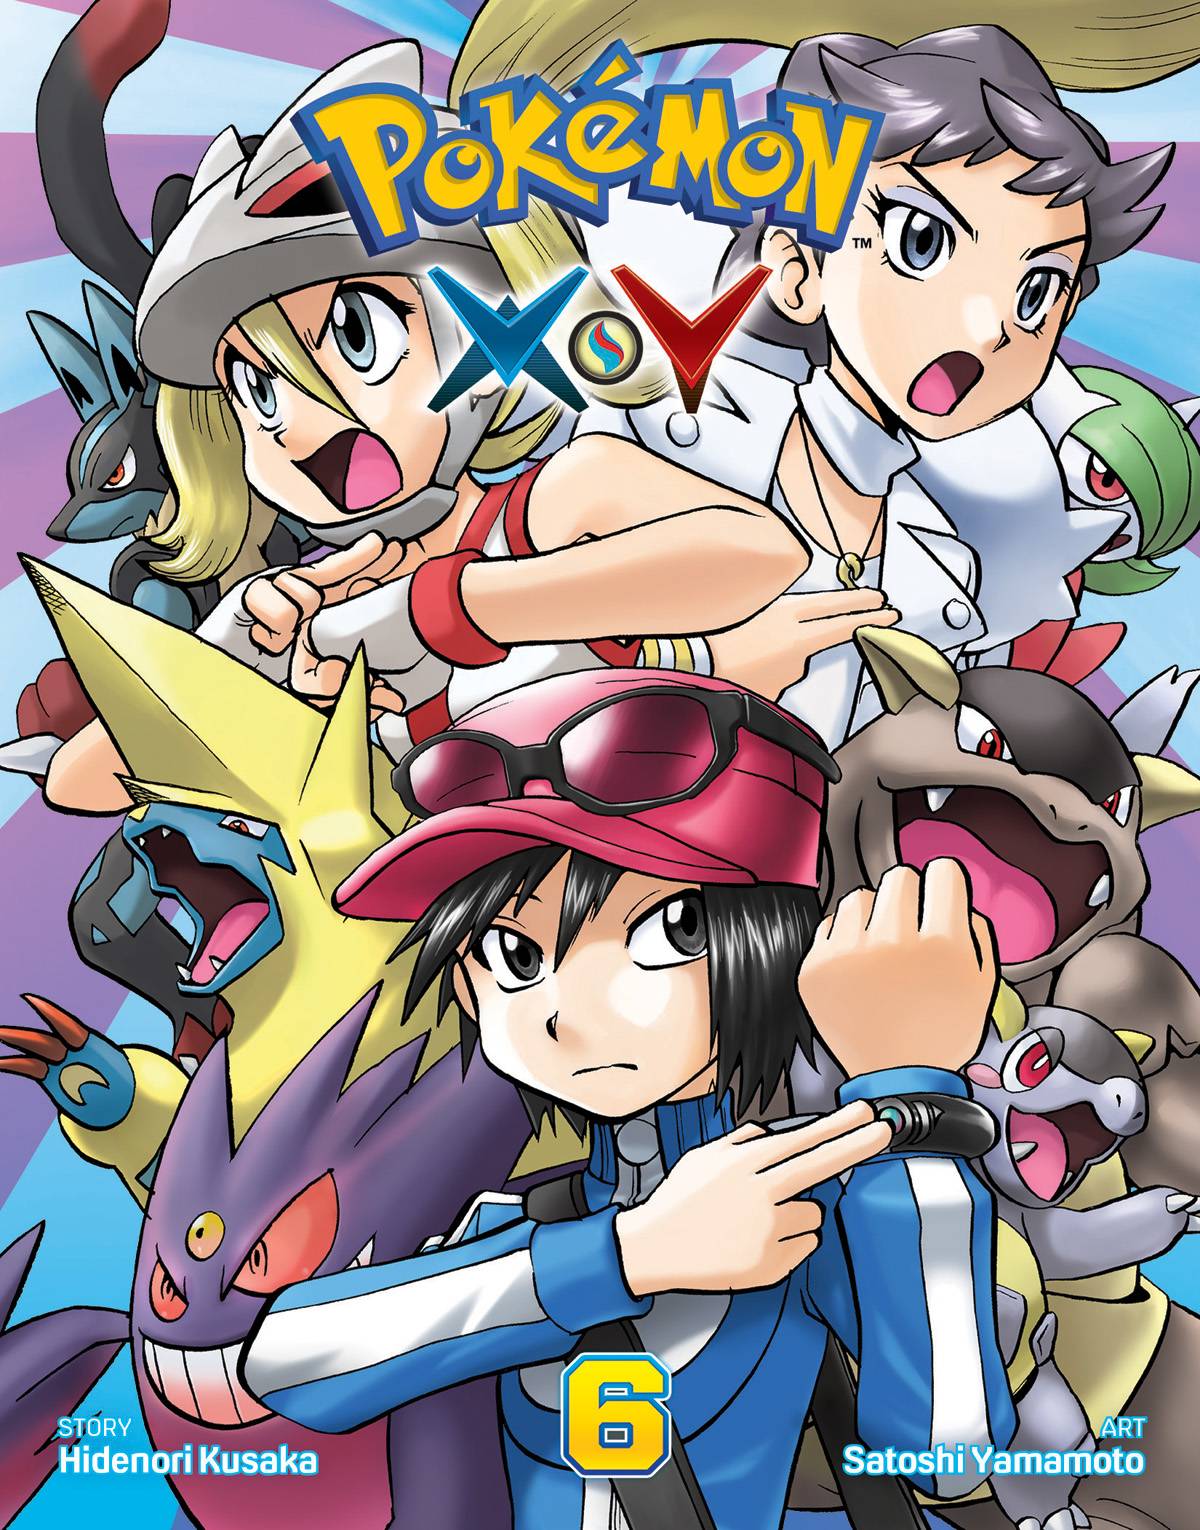 Pokémon Xy Manga Volume 6